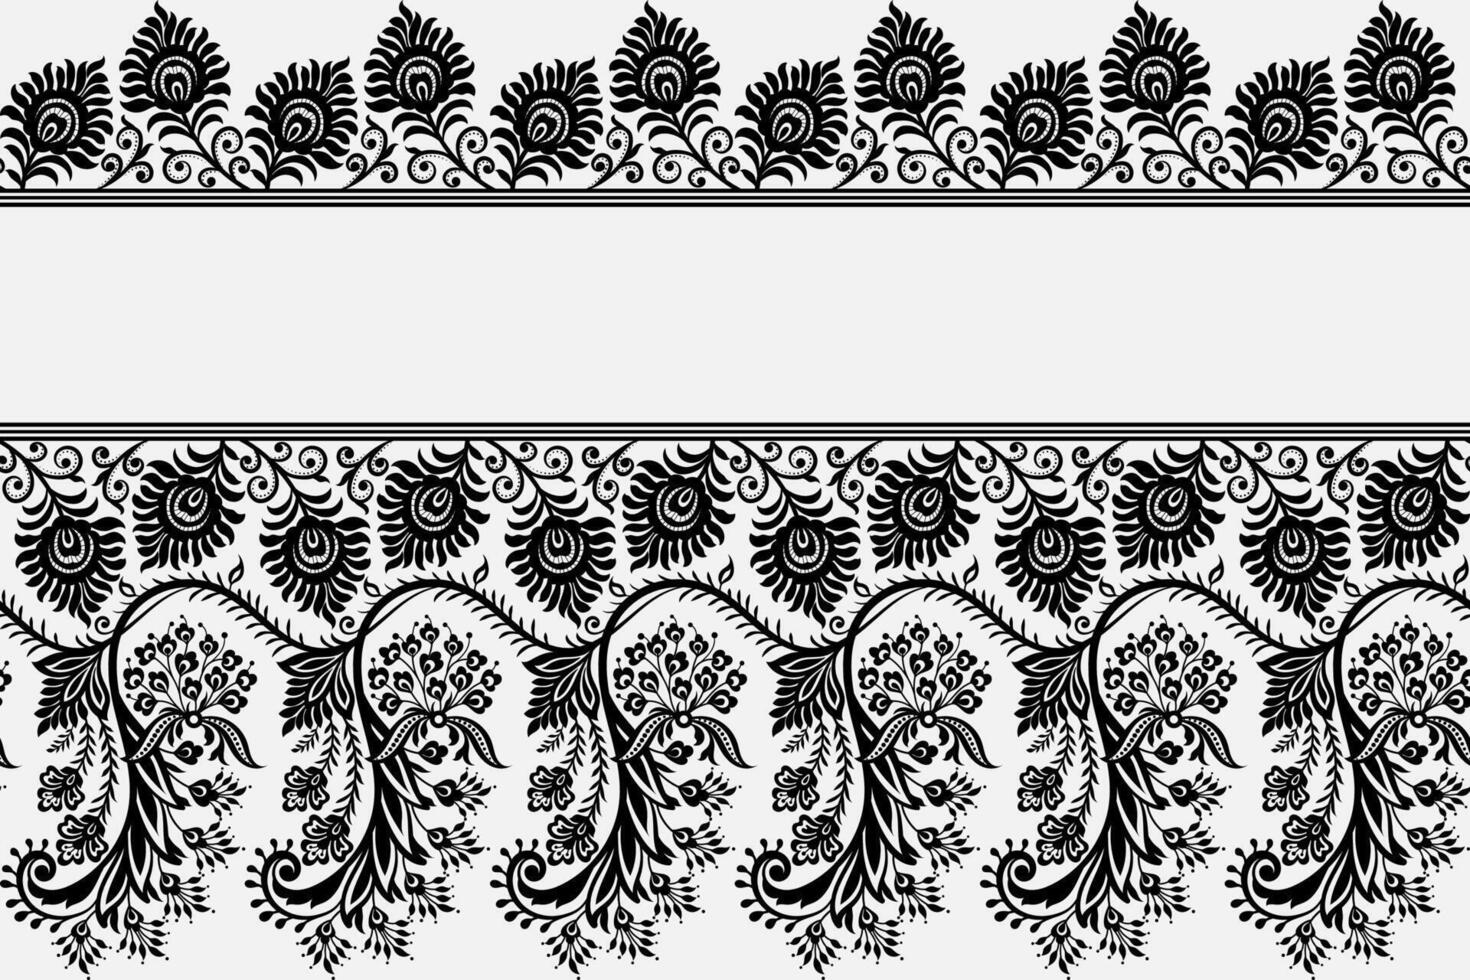 spets sömlös bakgrund geometrisk etnisk orientalisk ikat sömlös mönster traditionell design för bakgrund, matta, tapeter, kläder, inslagning, batik, tyg, vektor illustration broderi stil.